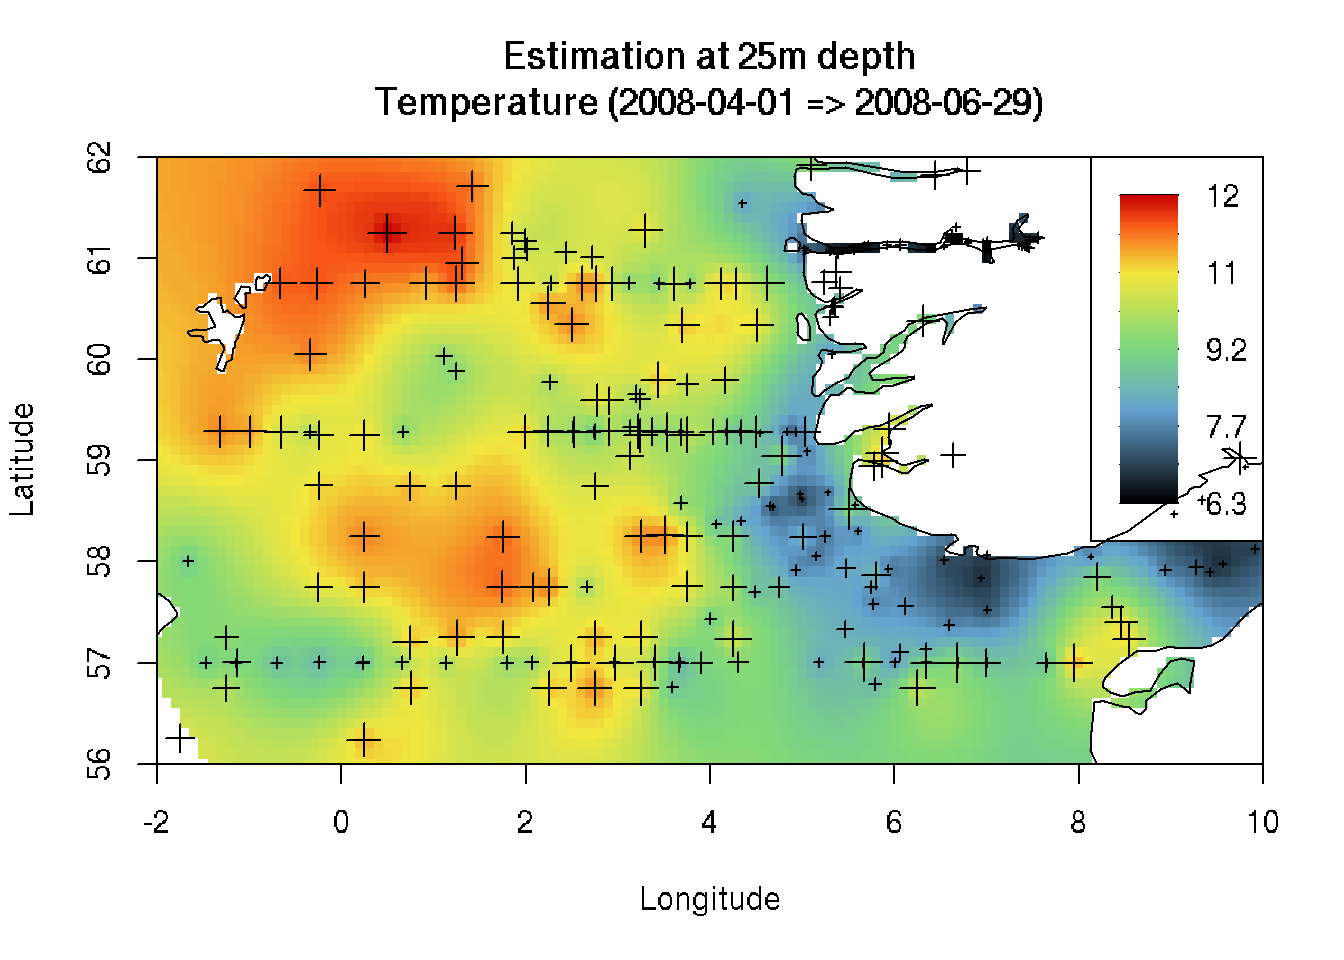 Estimation de la température au large de la Norvège au printemps 2008 à 25m de profondeur